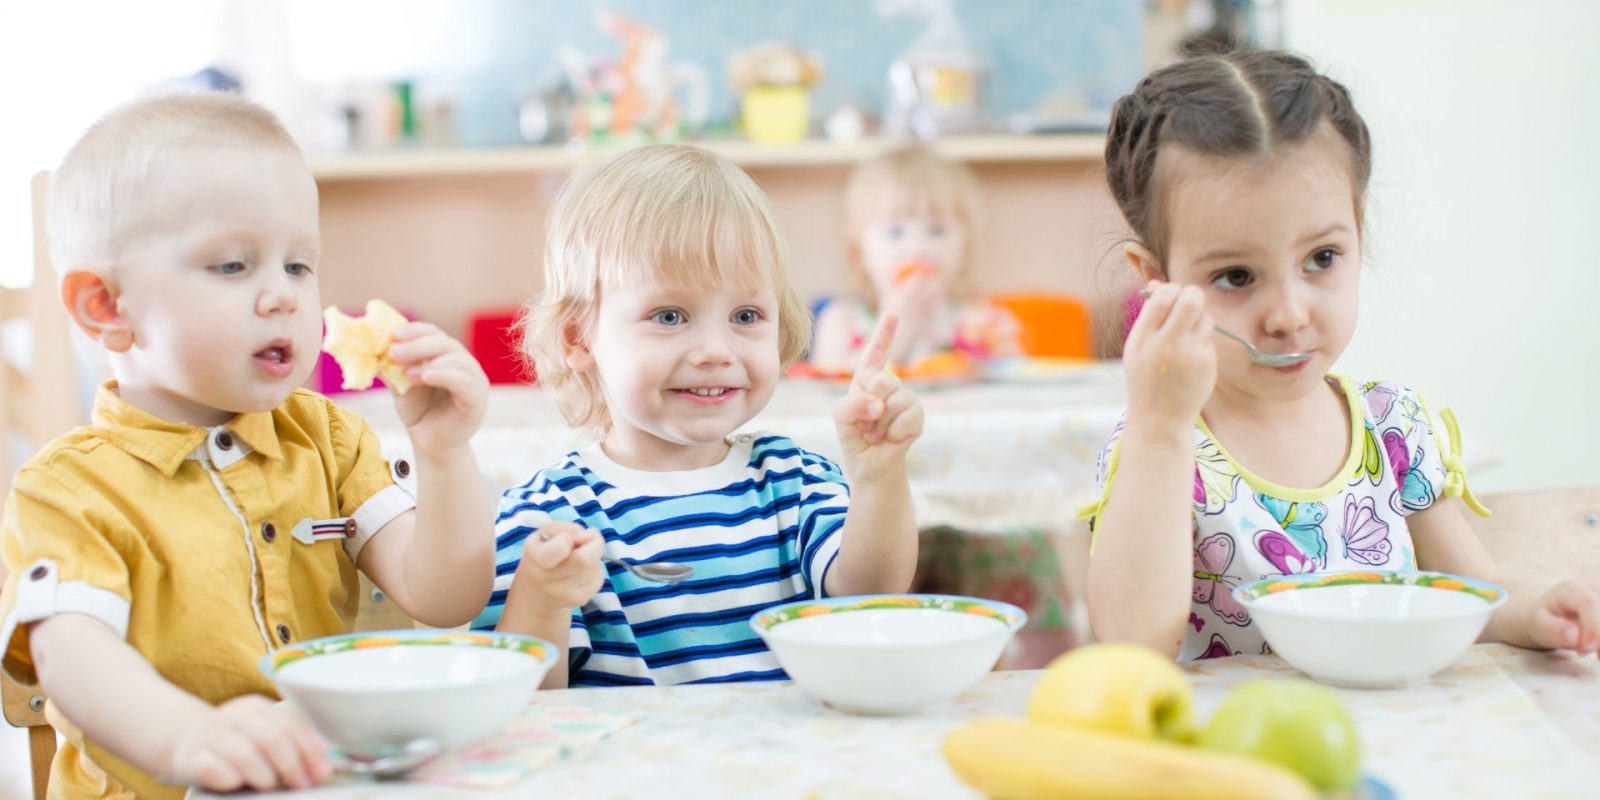 Lebensmittelhygiene im Kindergarten Vorschriften & Gefahren